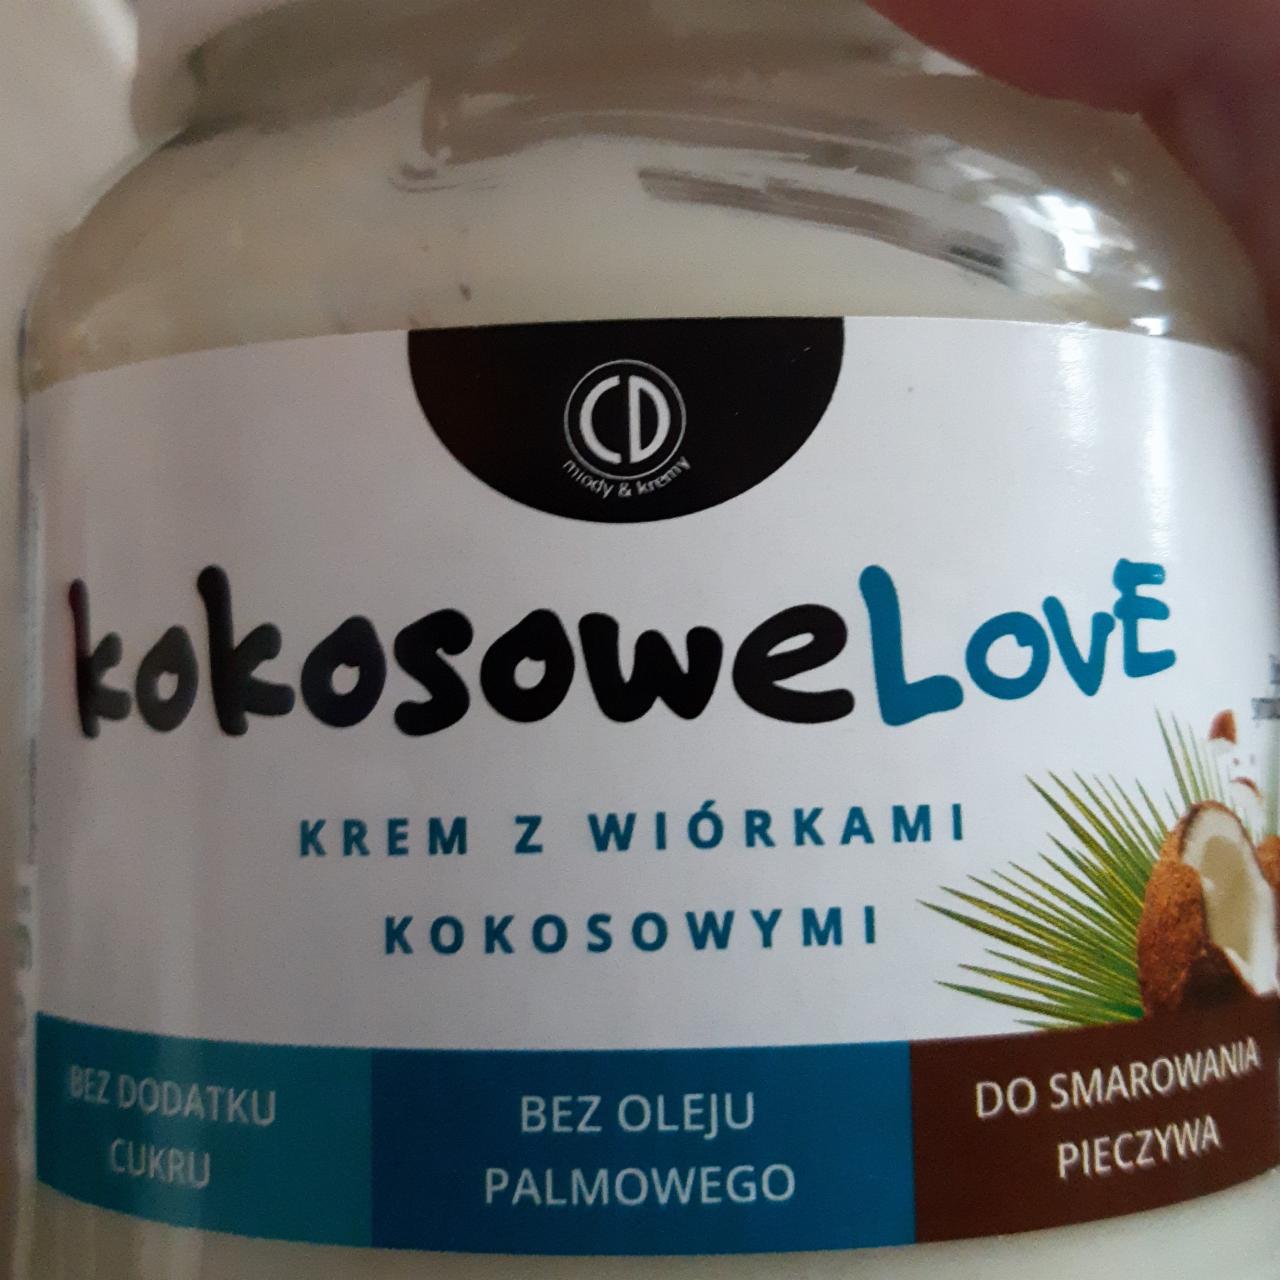 Фото - Крем с кокосовой стружкой Kokosowe Love CD